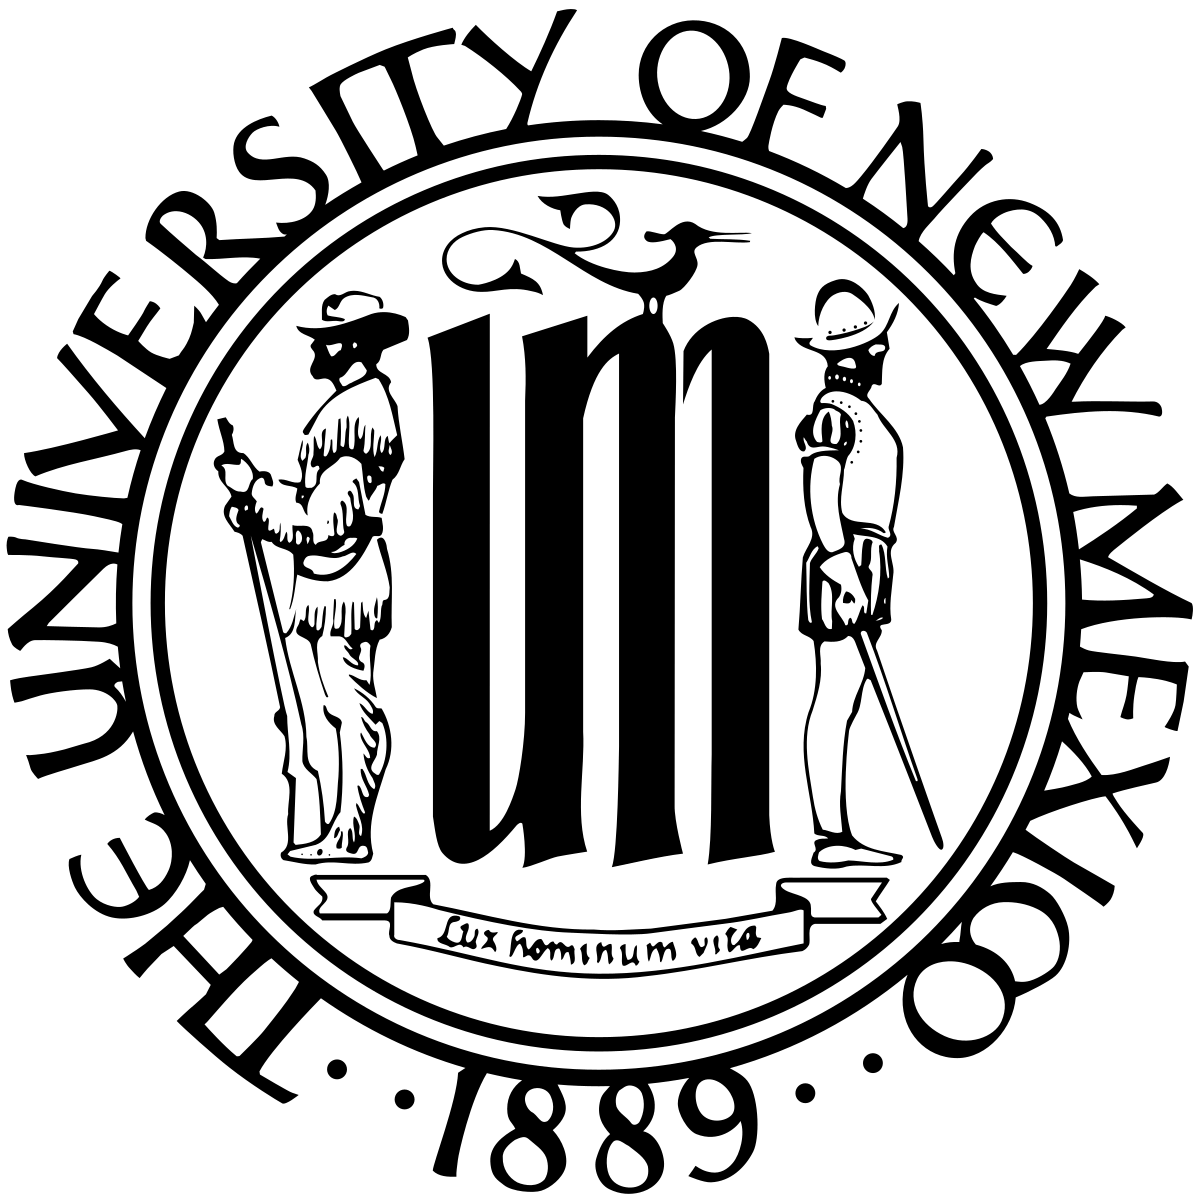 UNM Logo - University of New Mexico